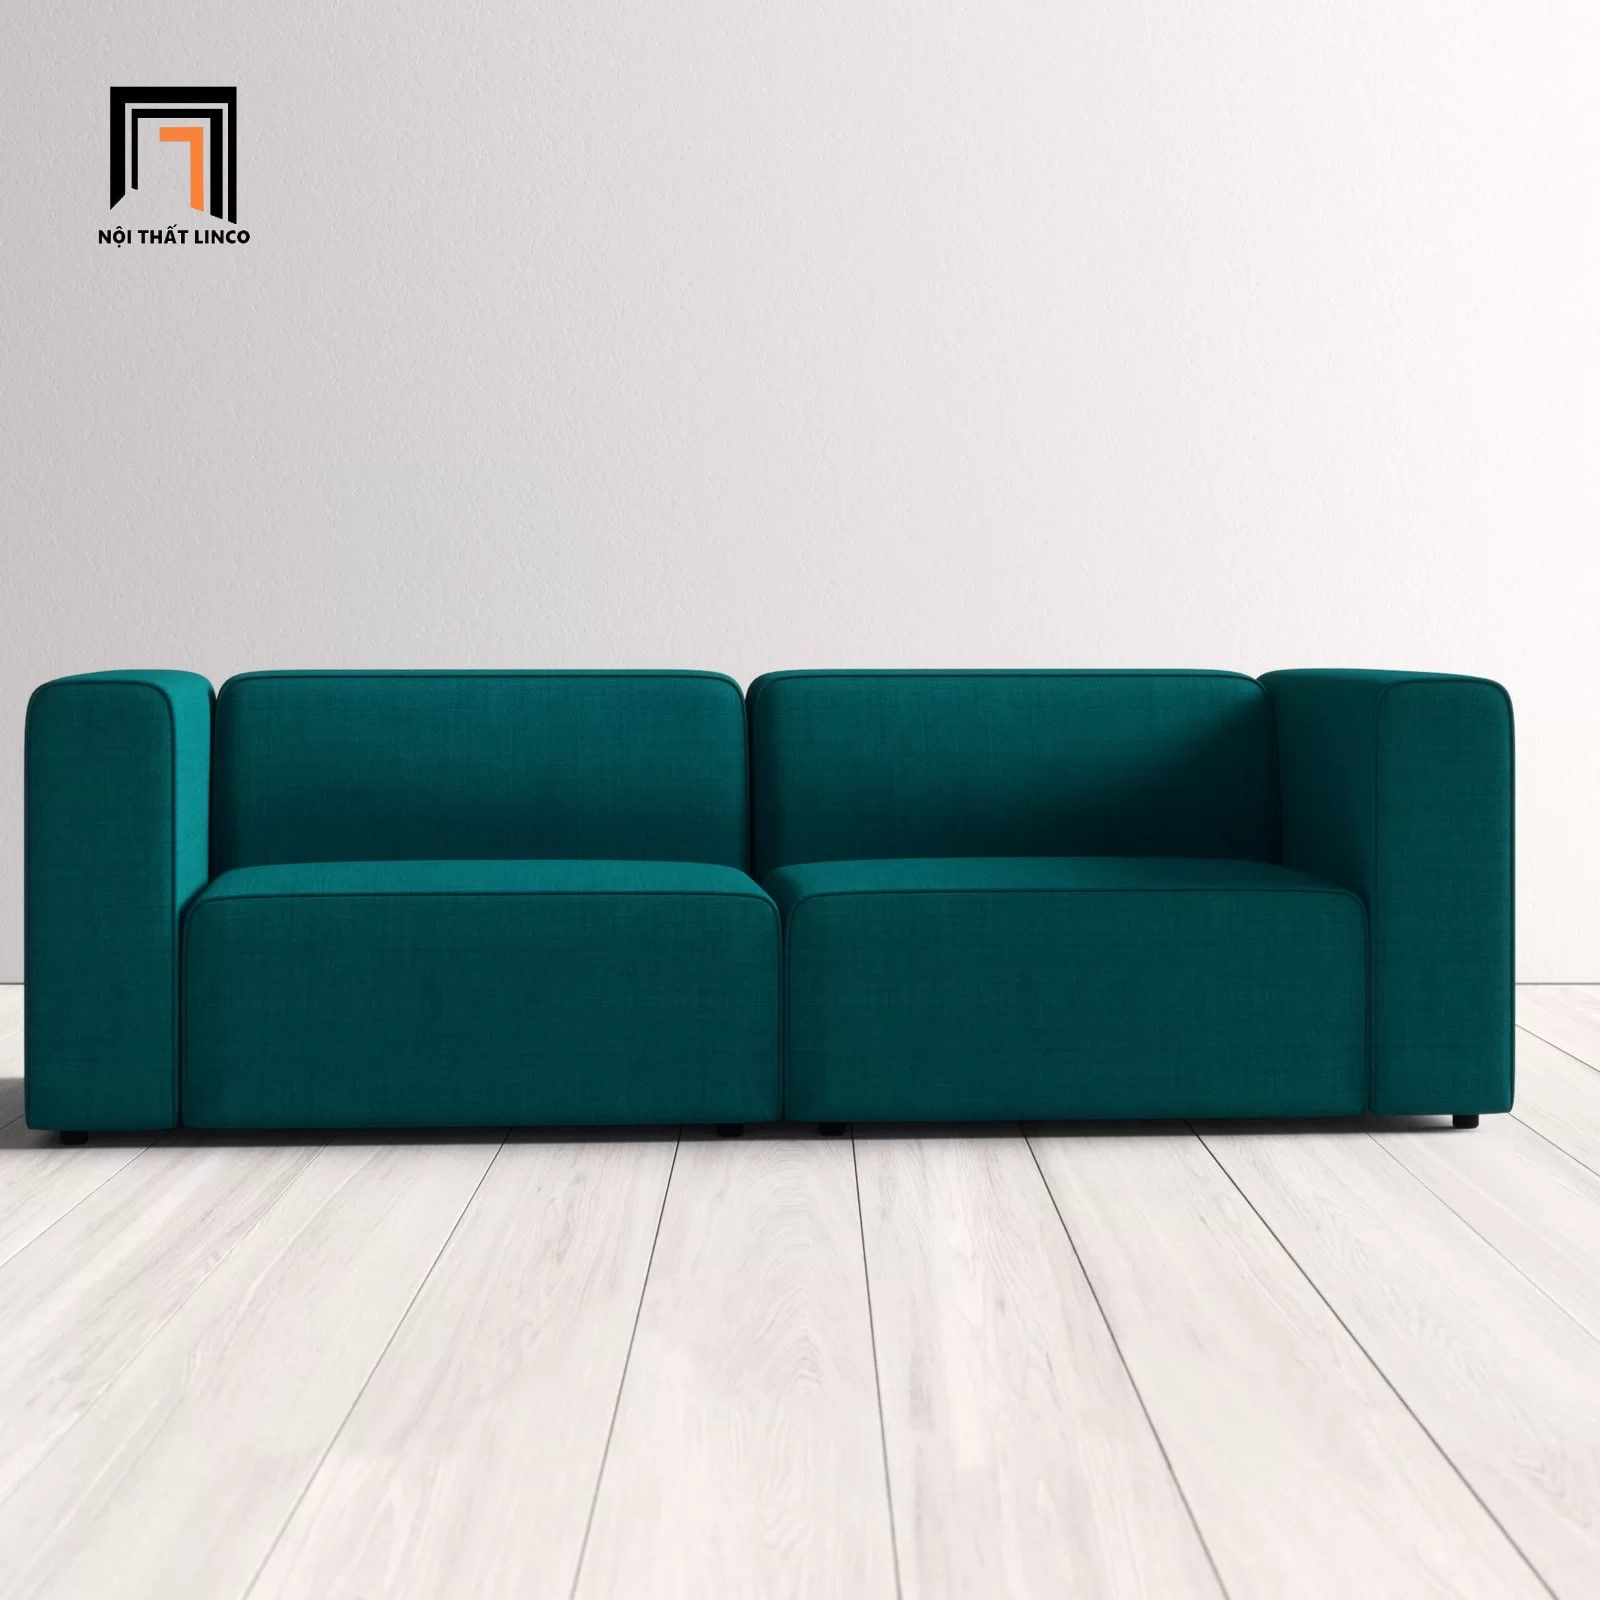  Ghế sofa băng nhỏ gọn 2m BT200 Modway giá rẻ cho chung cư 